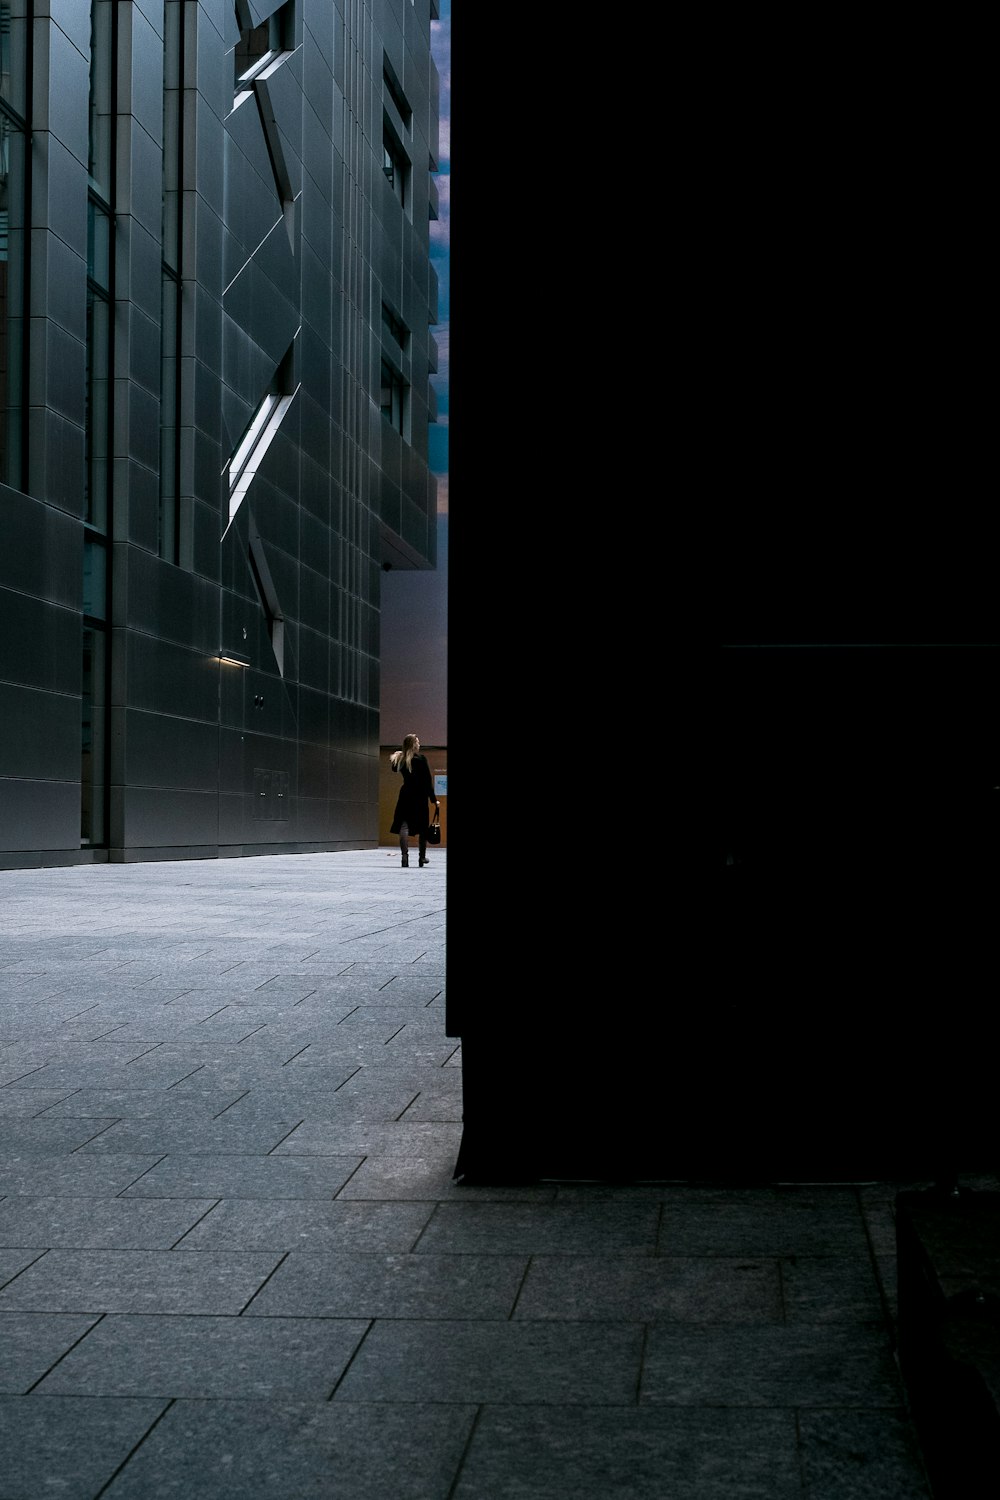 man wearing black dress while walking near building